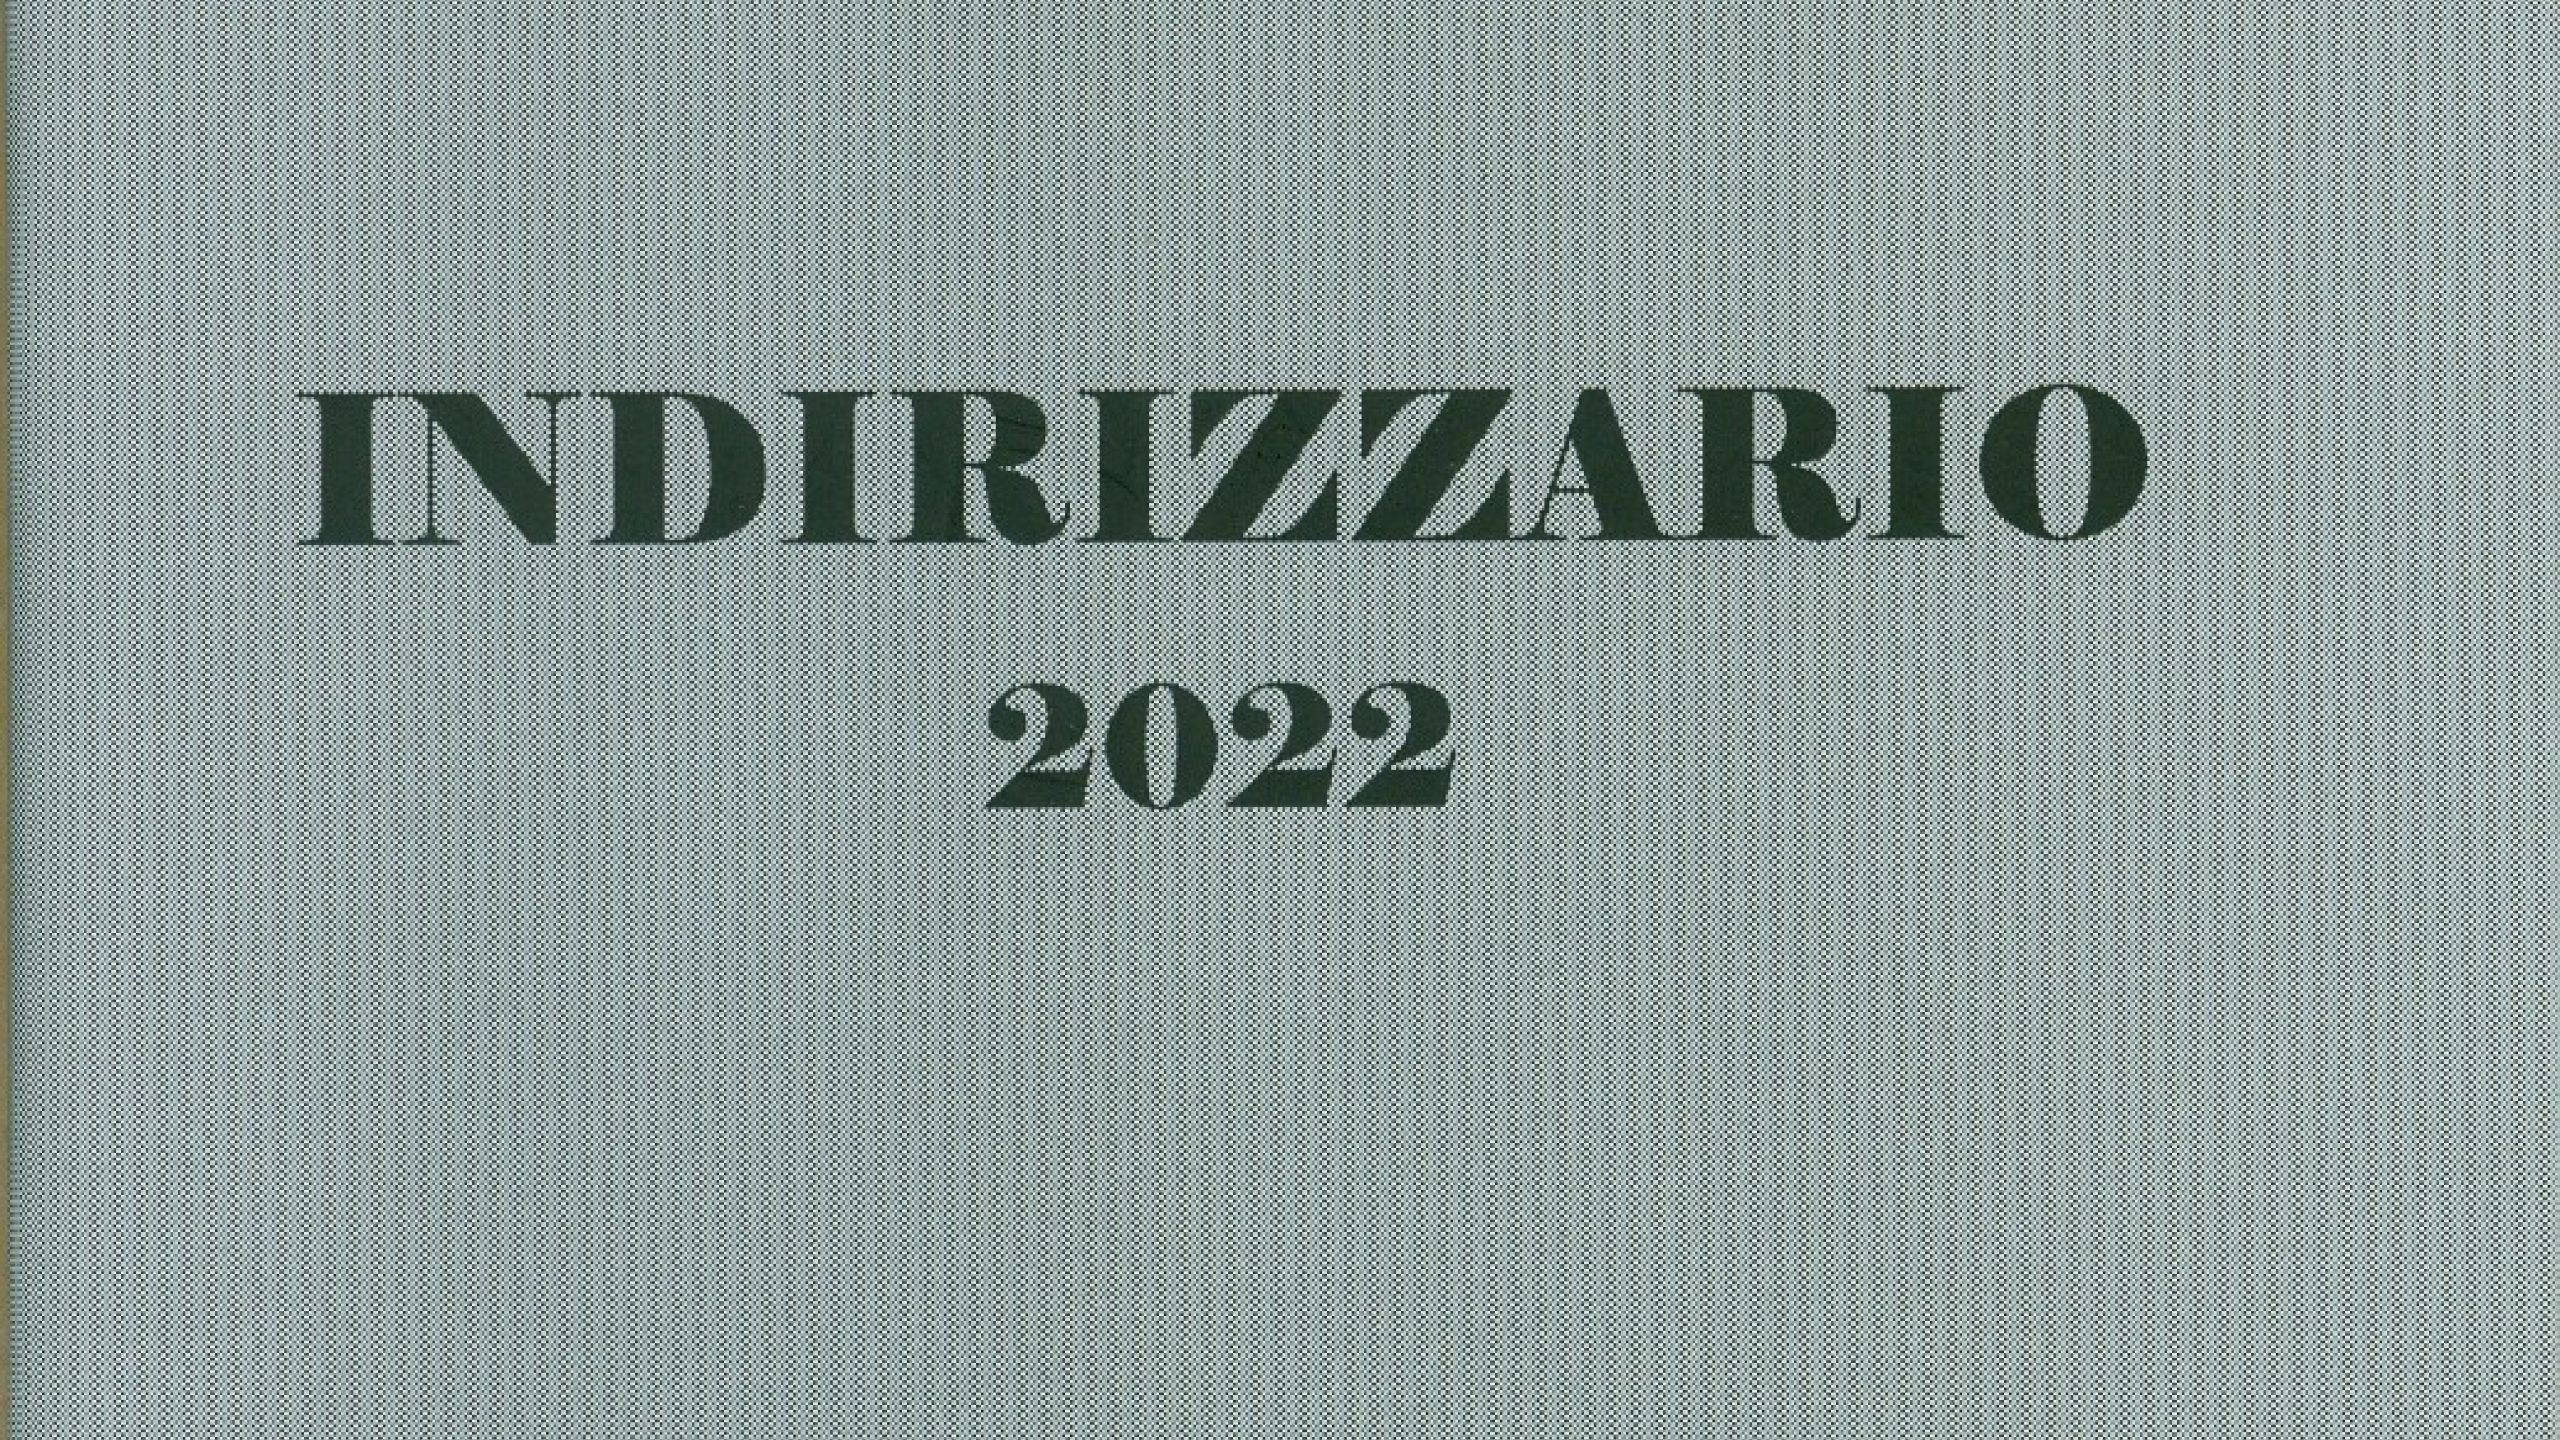 INDIRIZZARIO 2022